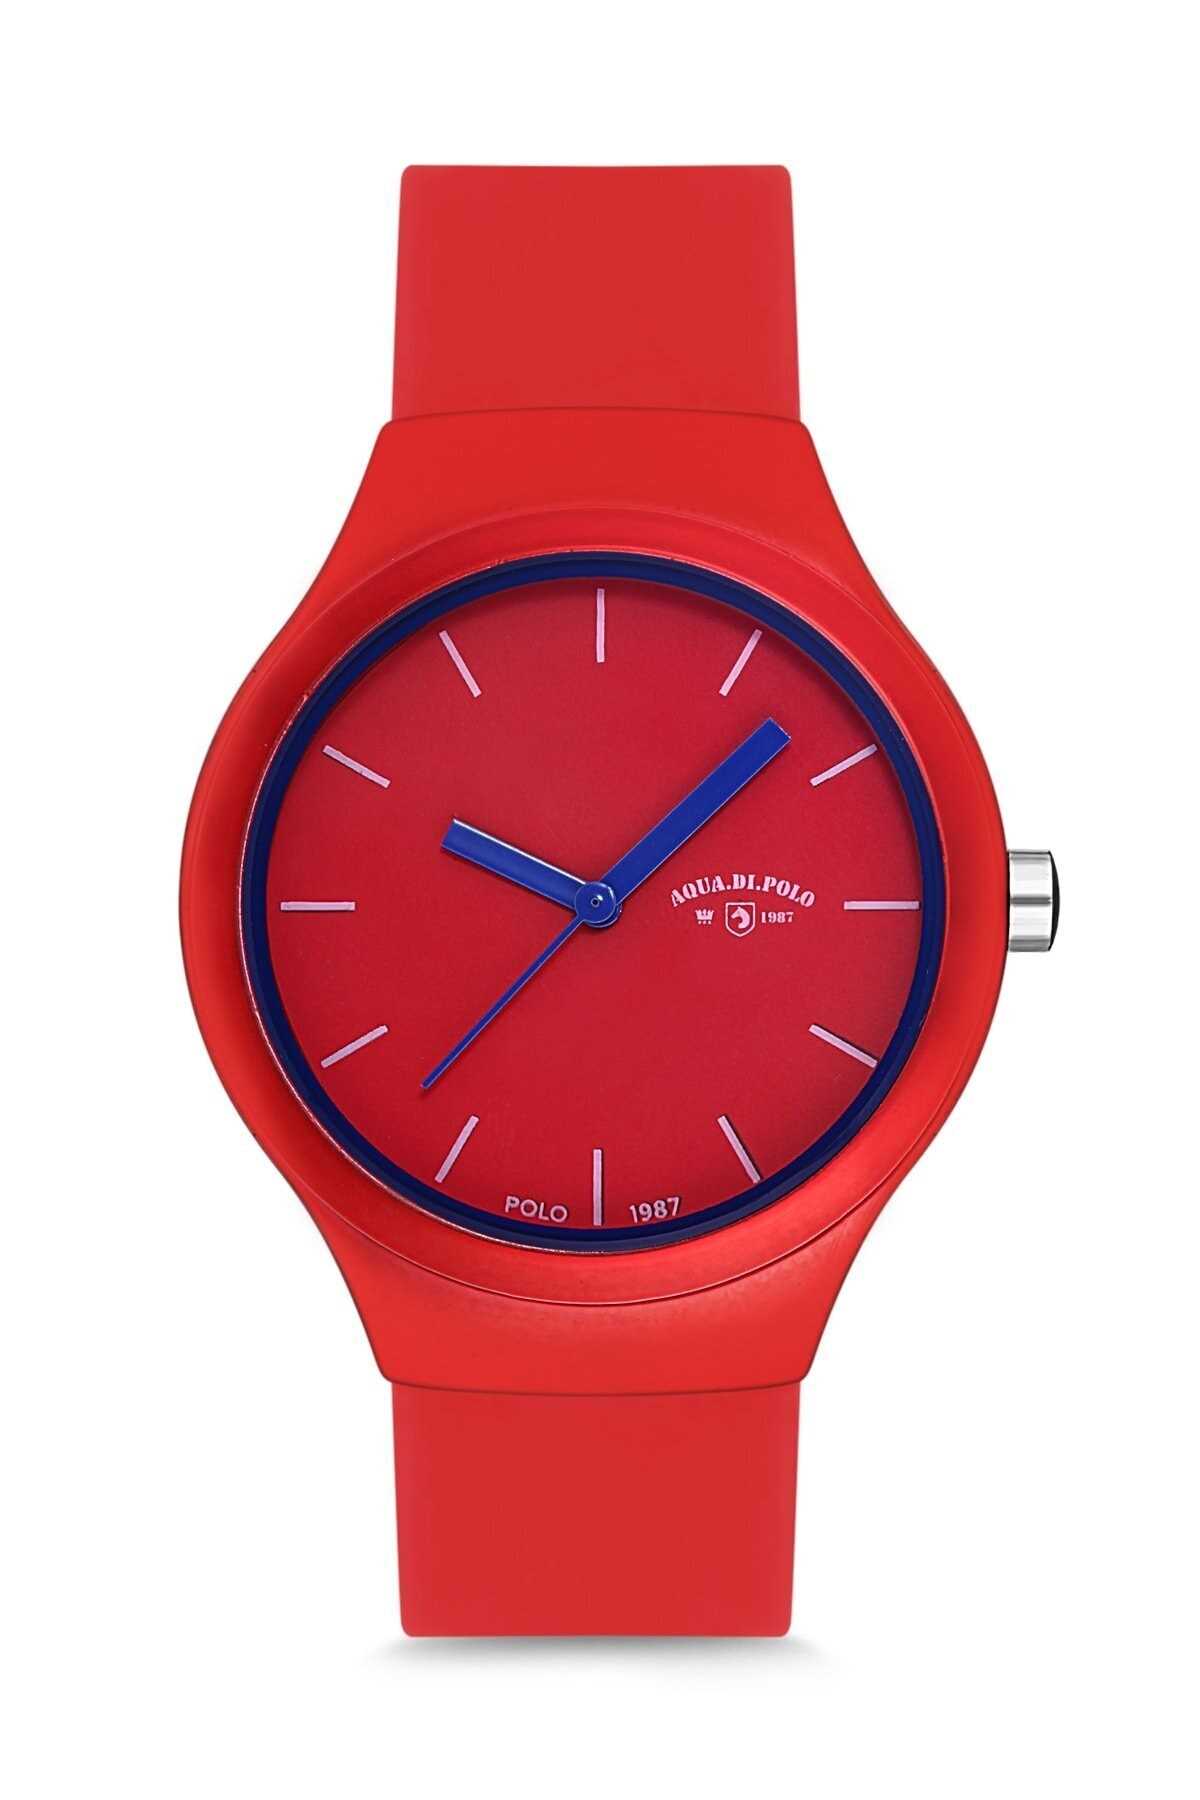 فروشگاه ساعت اورجینال مارک Aqua Di Polo 1987 رنگ قرمز ty32430514